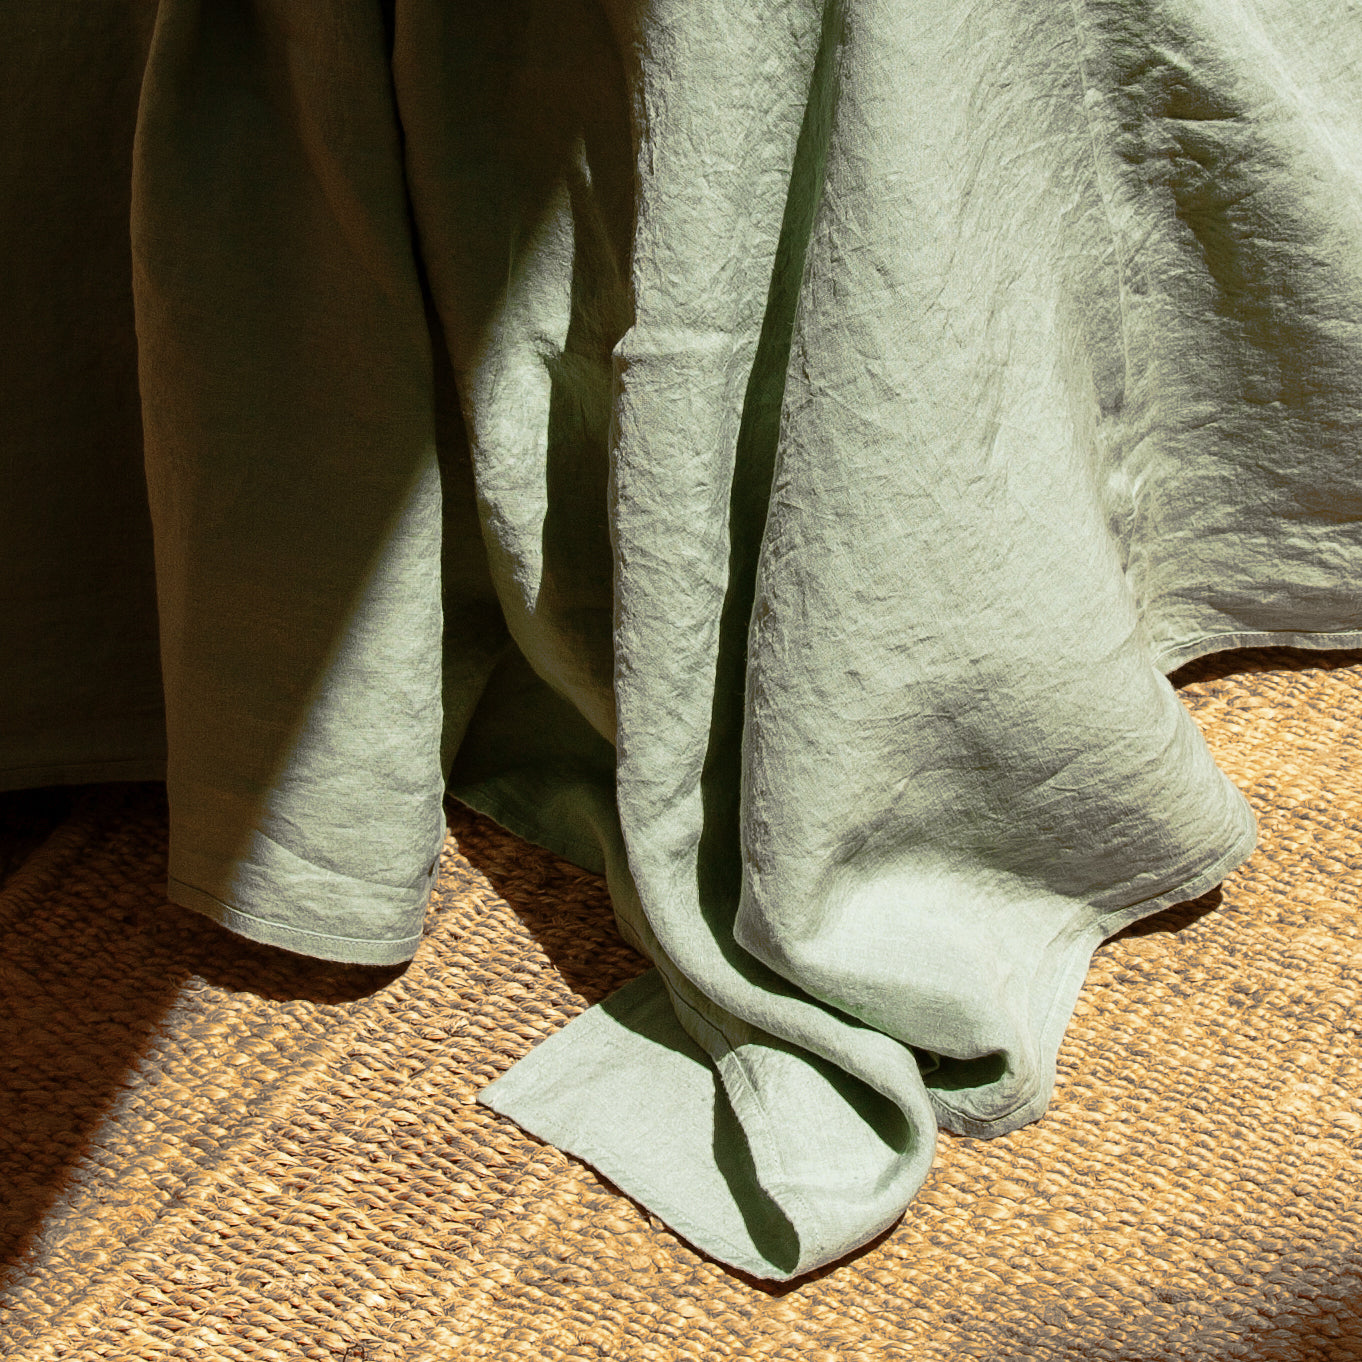 Sábana encimera de lino verde olivo. Detalle del tejido sobre alfombra de rafia.